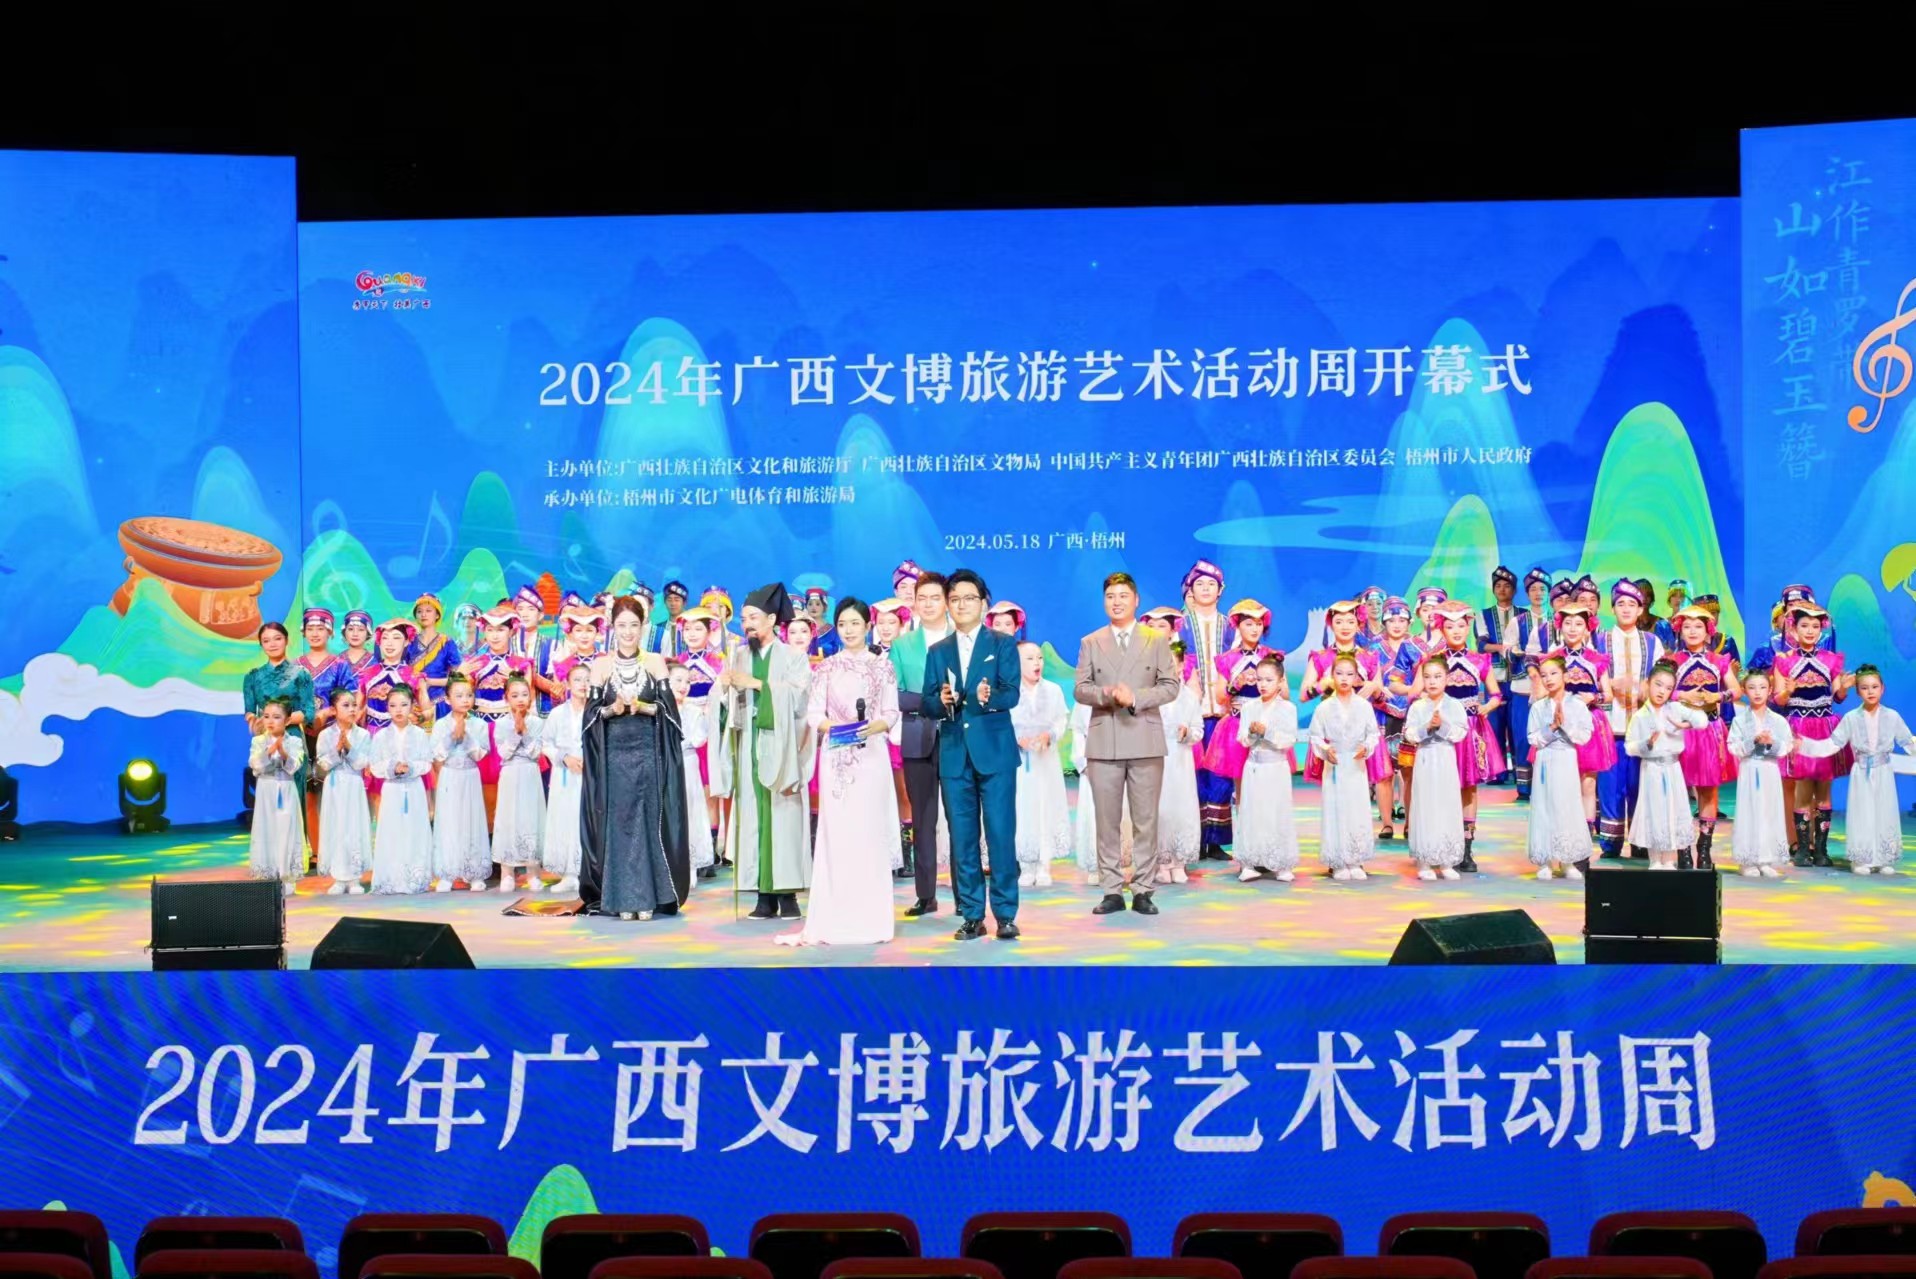 2024年廣西文博旅遊藝術活動周在桂梧州開幕